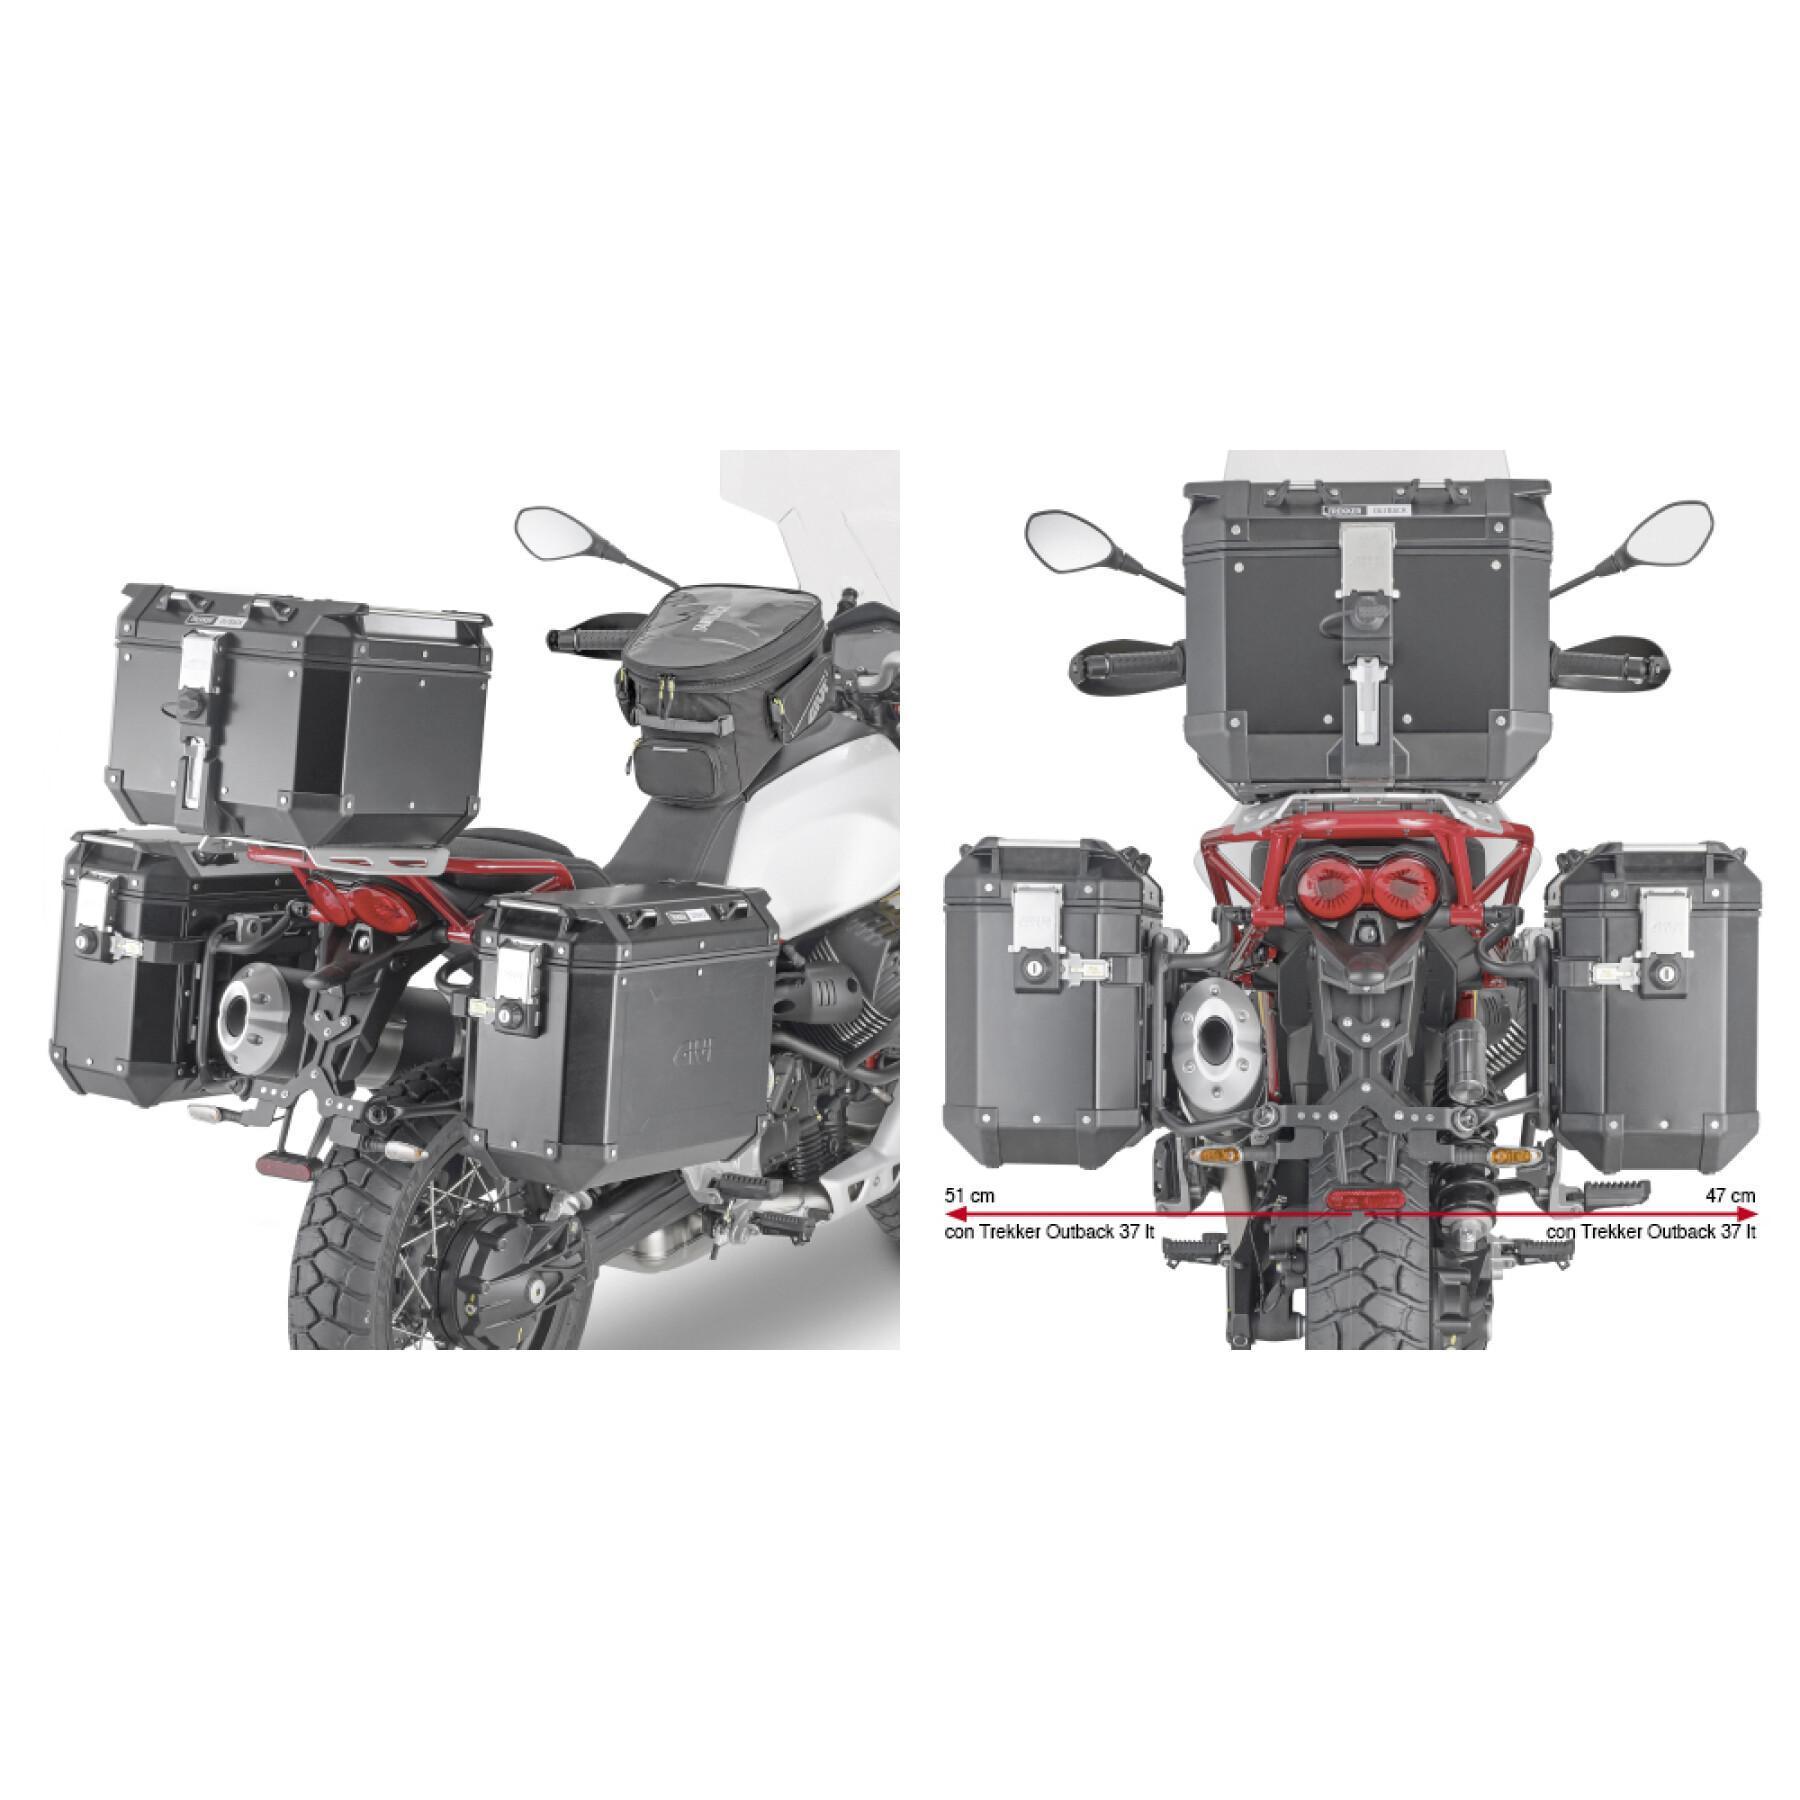 Suporte de caixa lateral de motocicleta rápida Givi Pl One Fit Givi Monokey Cam-Side Moto Guzzi V85 Tt (19 À 21)